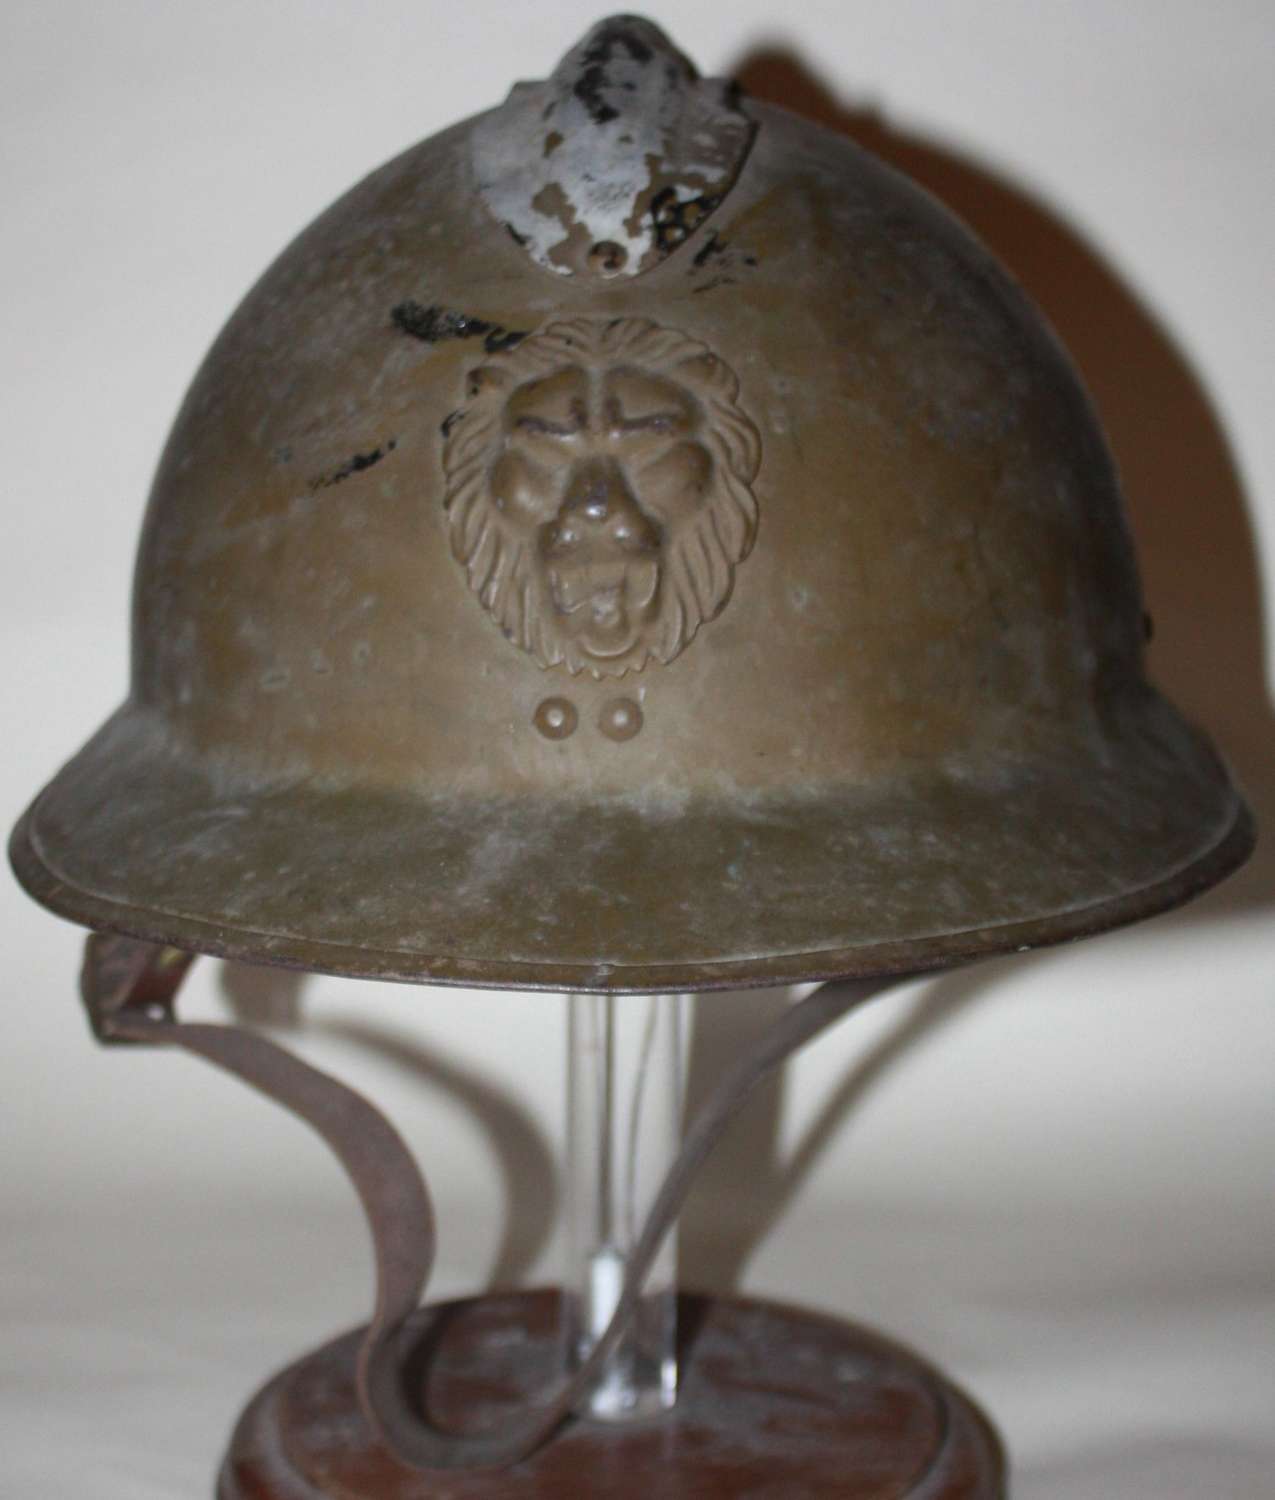 A Belgium WWII m1935 helmet in good original condition